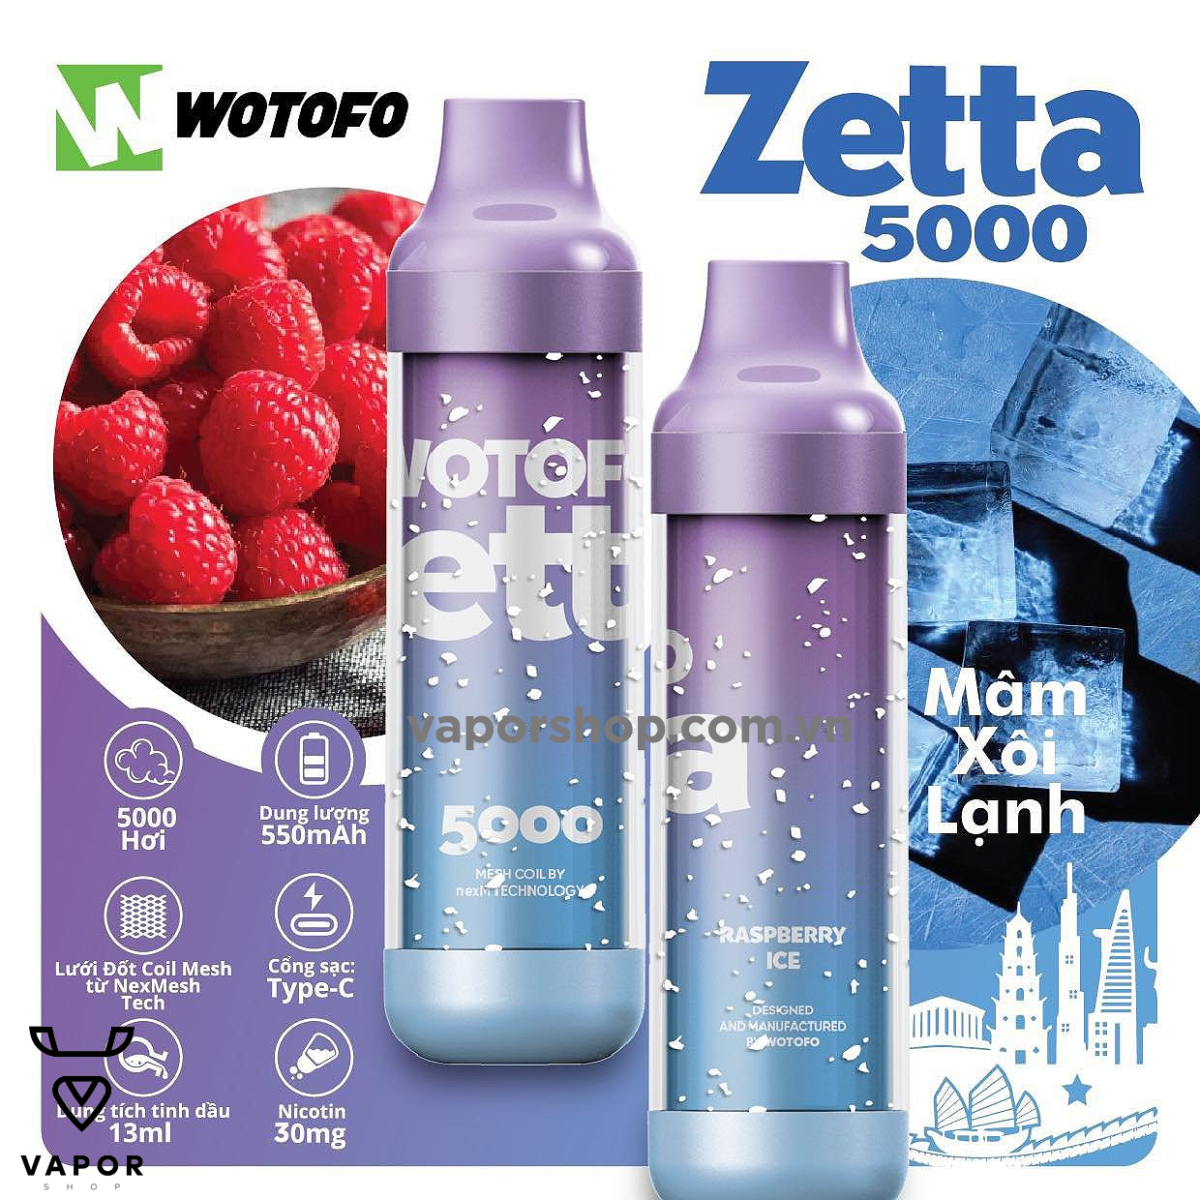 Wotofo Zetta 5000 puffs Sour Apple Táo Xanh - Vape tinh dầu pod chính hãng - Cai thuốc lá không độc hại sức khỏe